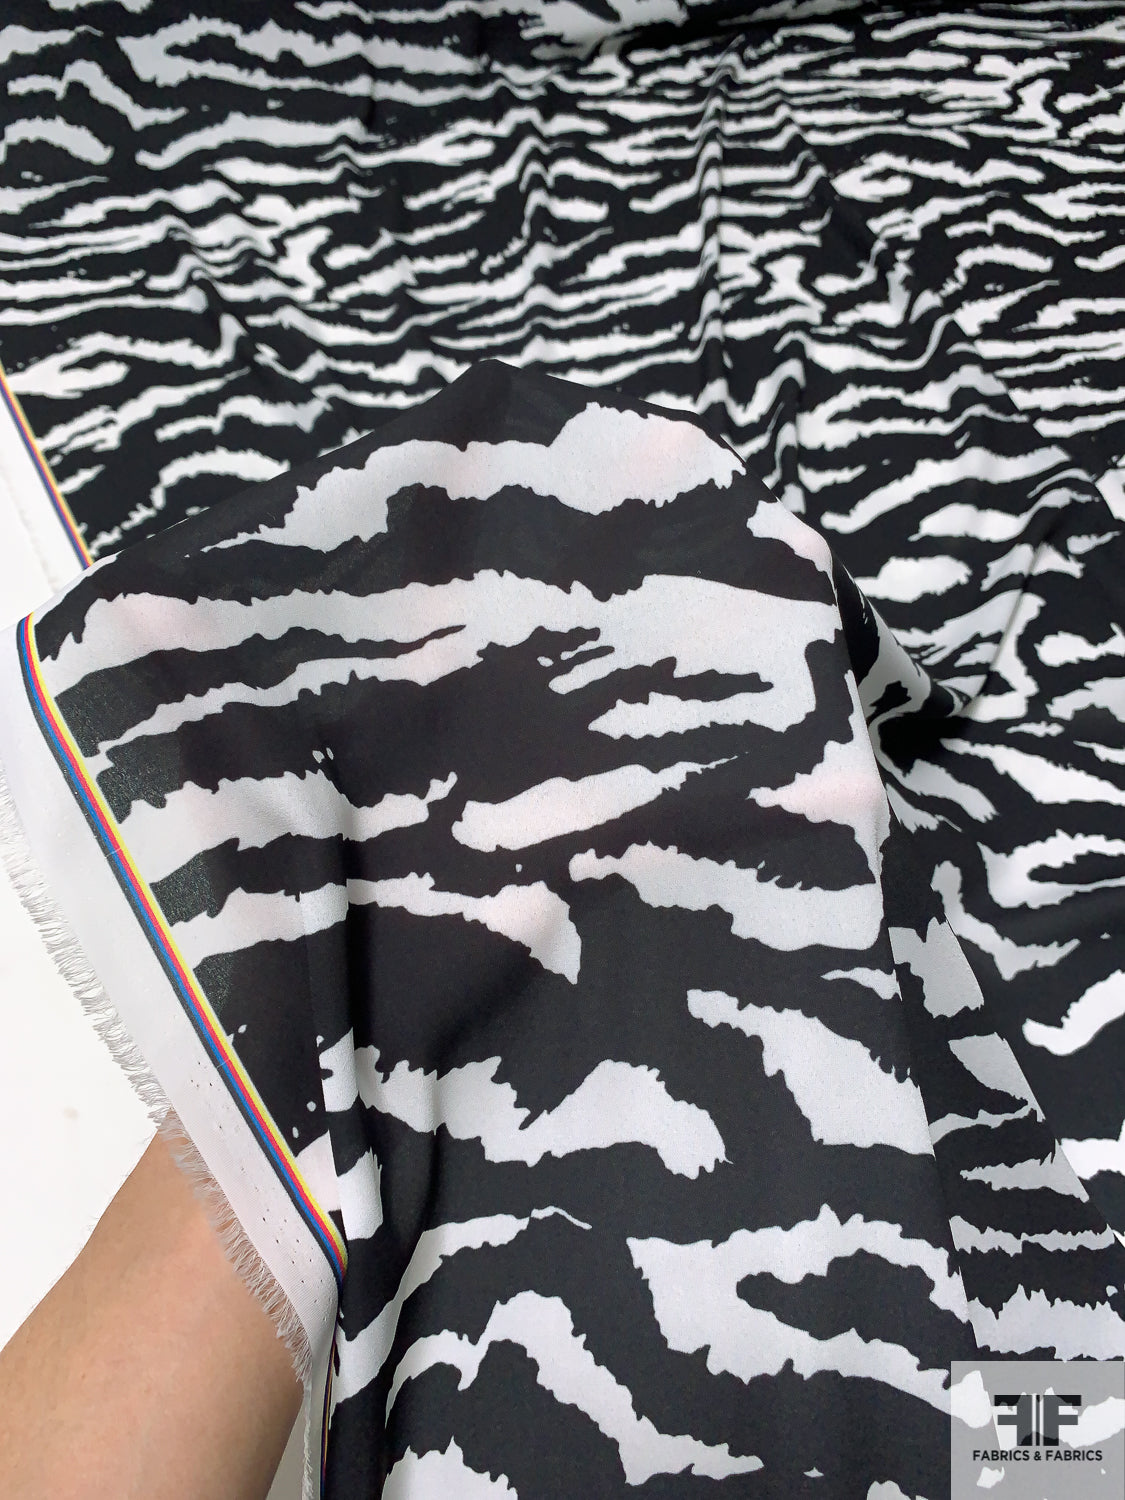 Zebra Printed Heavy Polyester Chiffon - Black / White